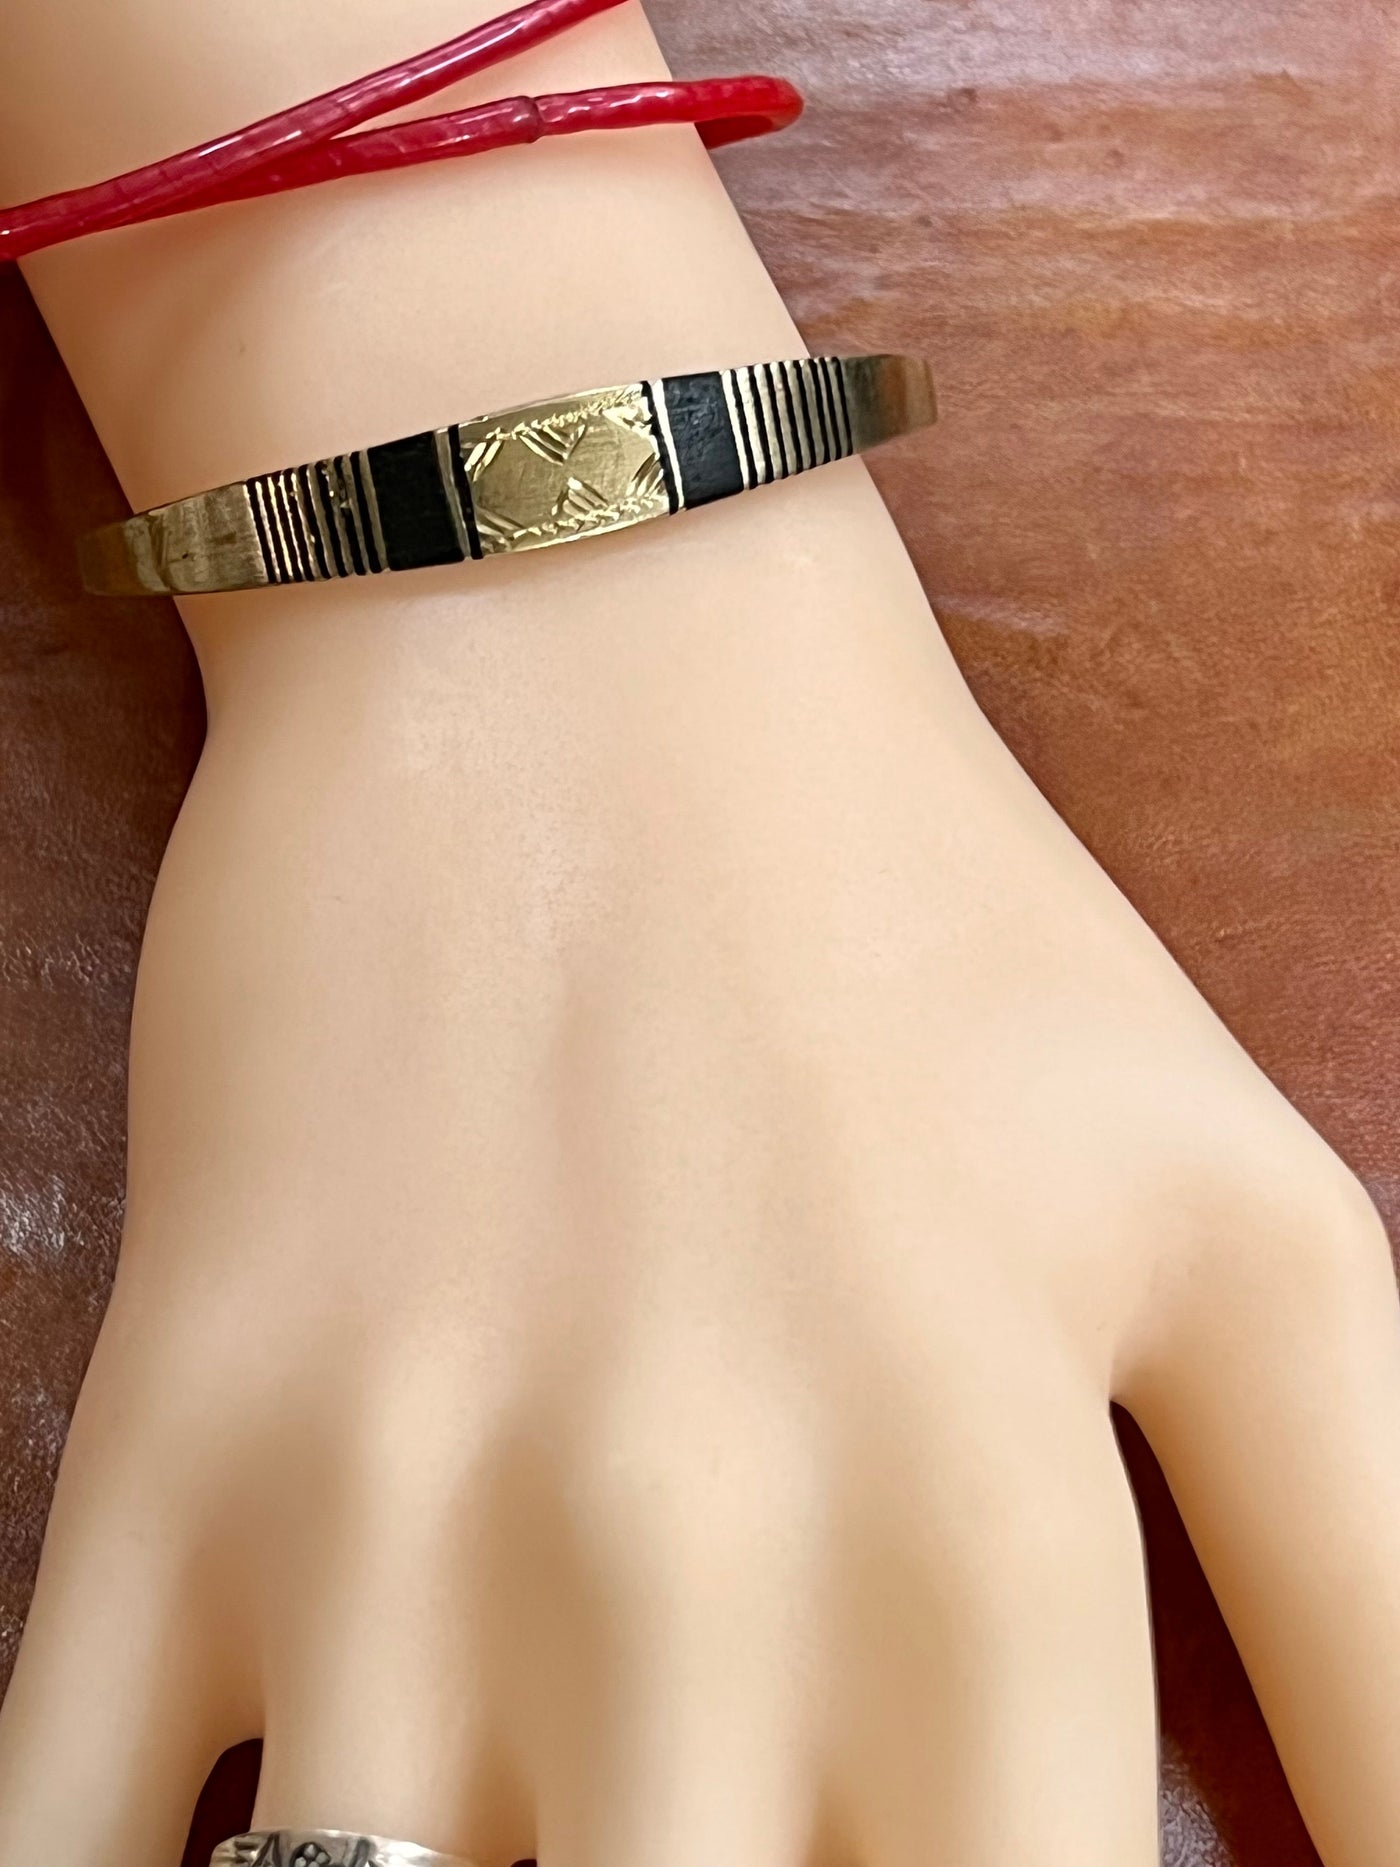 Adjustable Brass Bracelets (Wholesale)